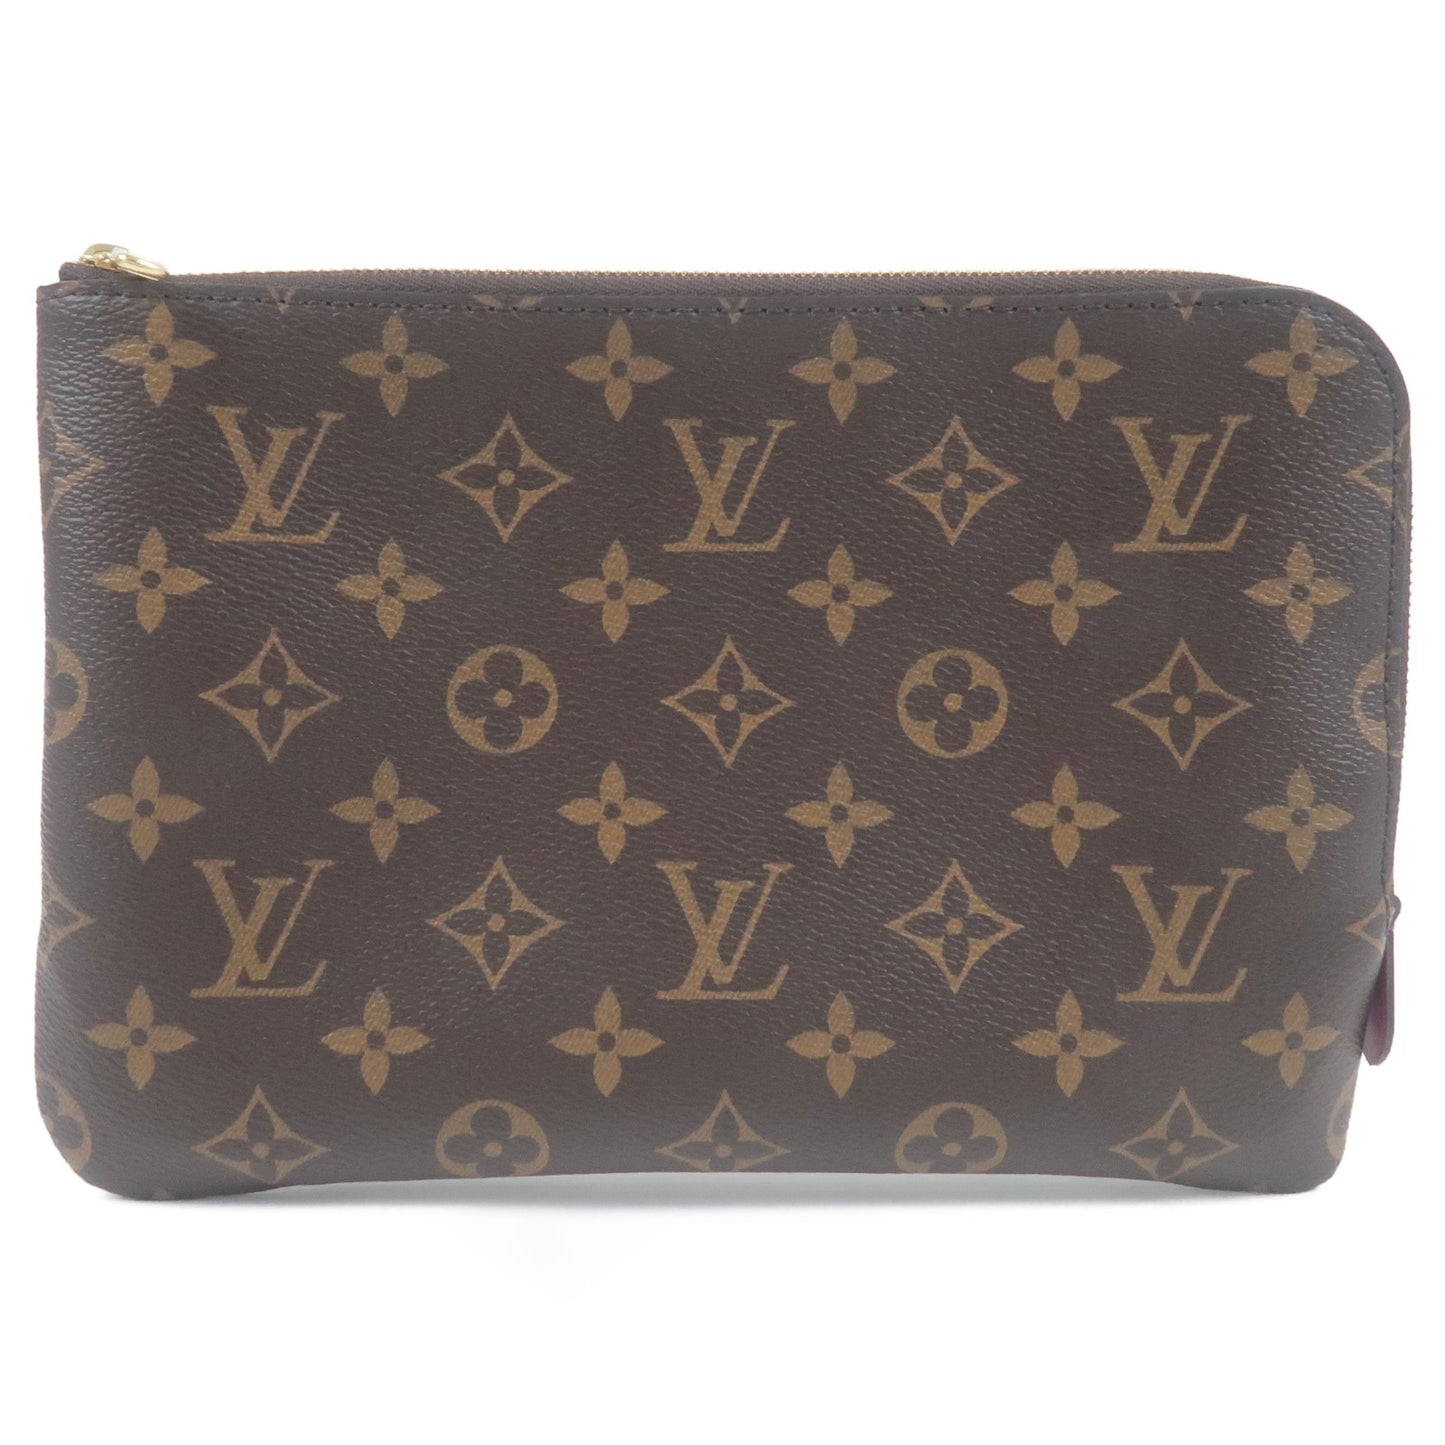 Louis-Vuitton-Monogram-Etui-Voyage-Clutch-Bag-Pouch-M44148